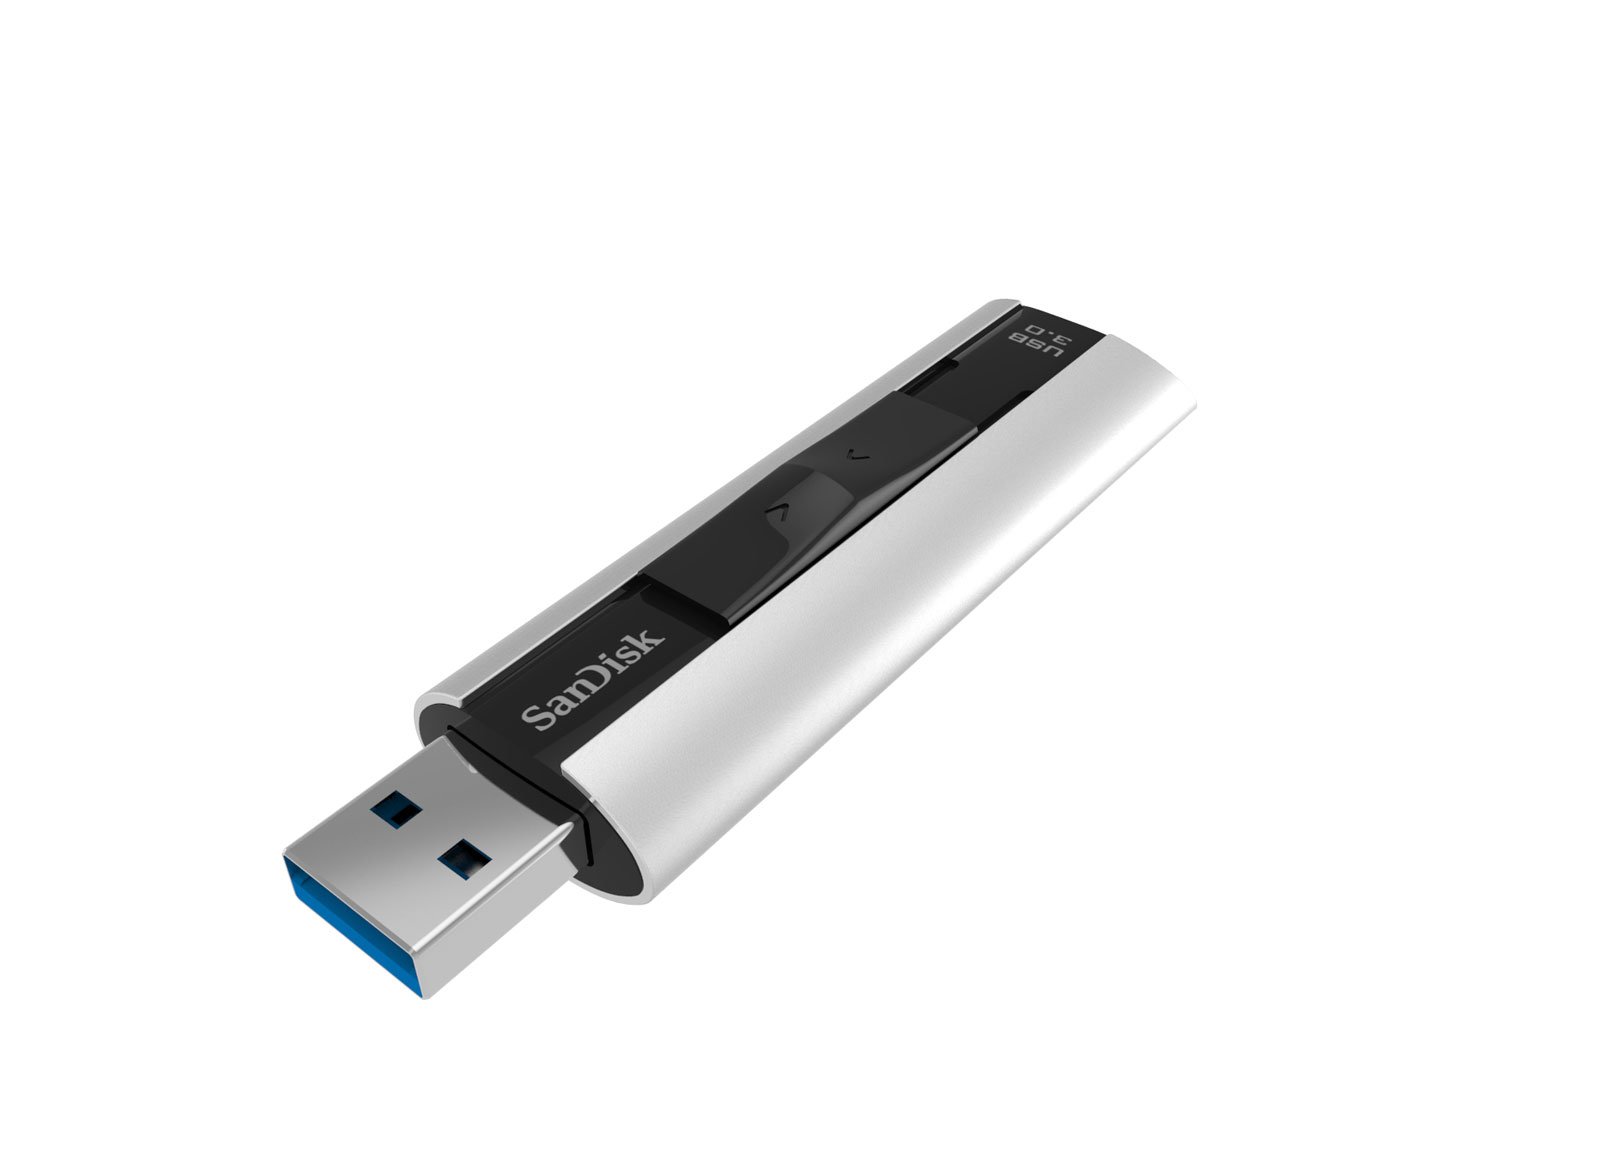 SanDisk Extreme Pro USB 3.0 - Schraege Draufsicht Geöffnet